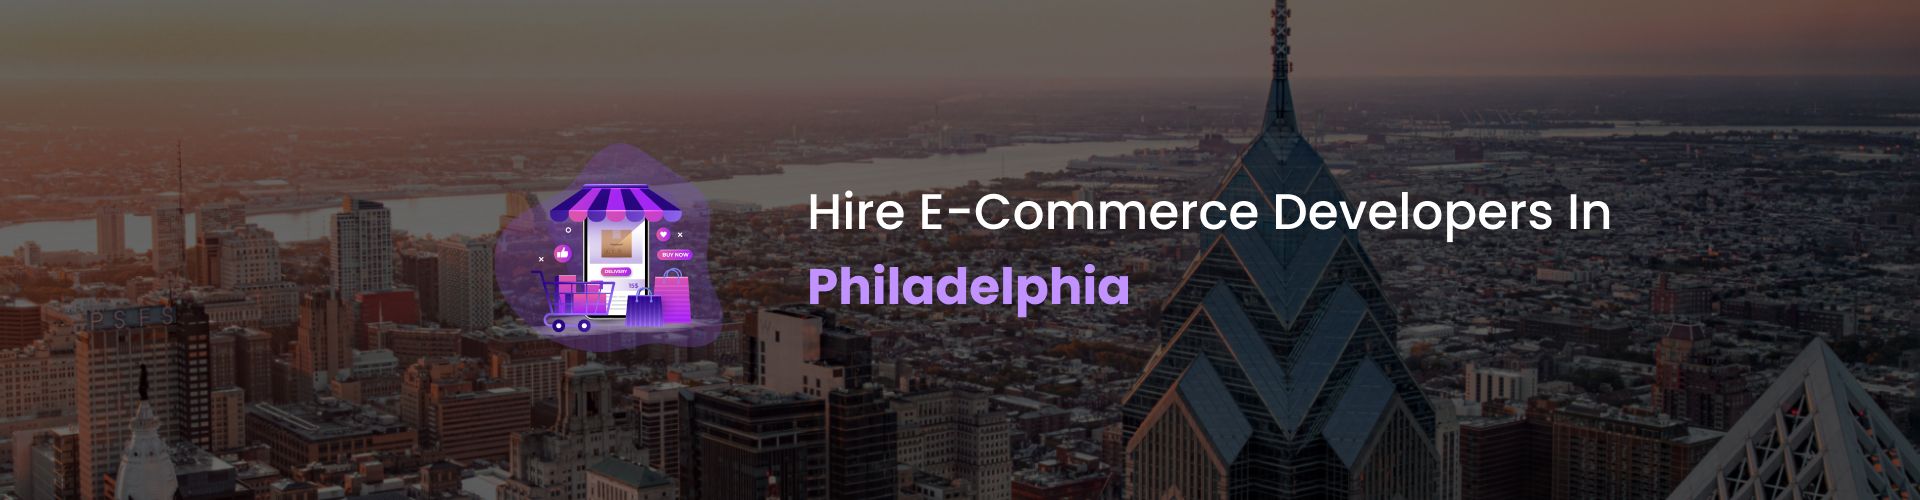 ecommerce development company in philadelphia